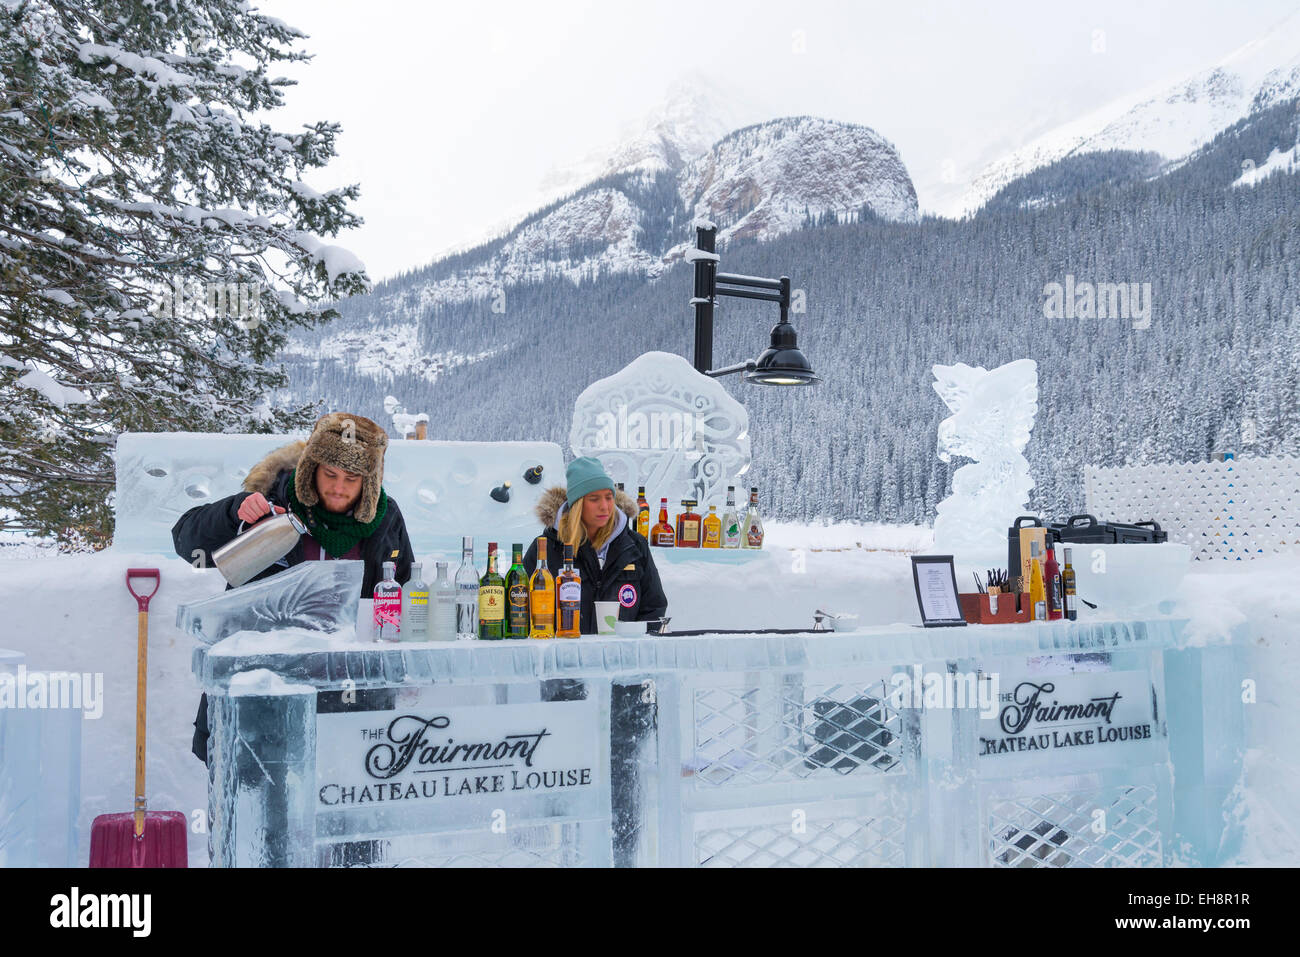 Bar de glace extérieure de l'Hôtel Fairmont Château Lake Louise, Banff National Park, Alberta, Canada Banque D'Images